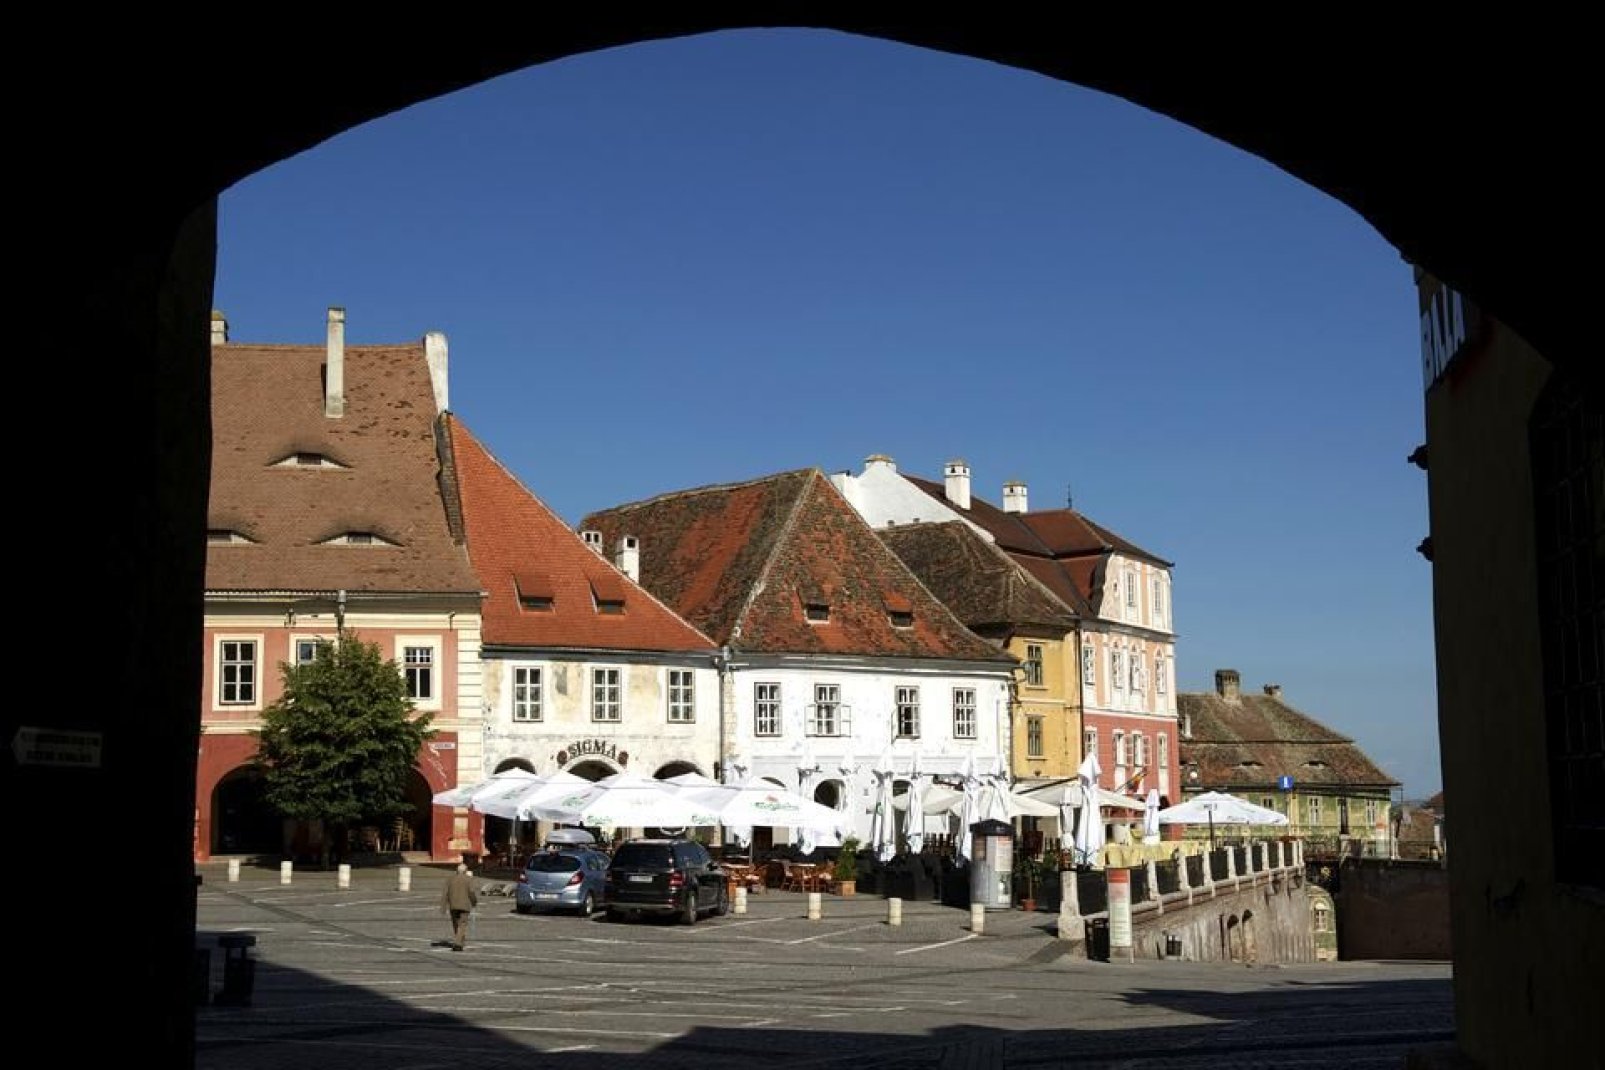 Die authentische Architektur von Sibiu lsst die Stadt zwar wie ein Freiluftmuseum erscheinen, allerdings herrscht hier keineswegs ein Museumsambiente. Denn in dieser Stadt ist bis spt in die Nacht viel los, und die Einwohner mischen sich gerne unter die